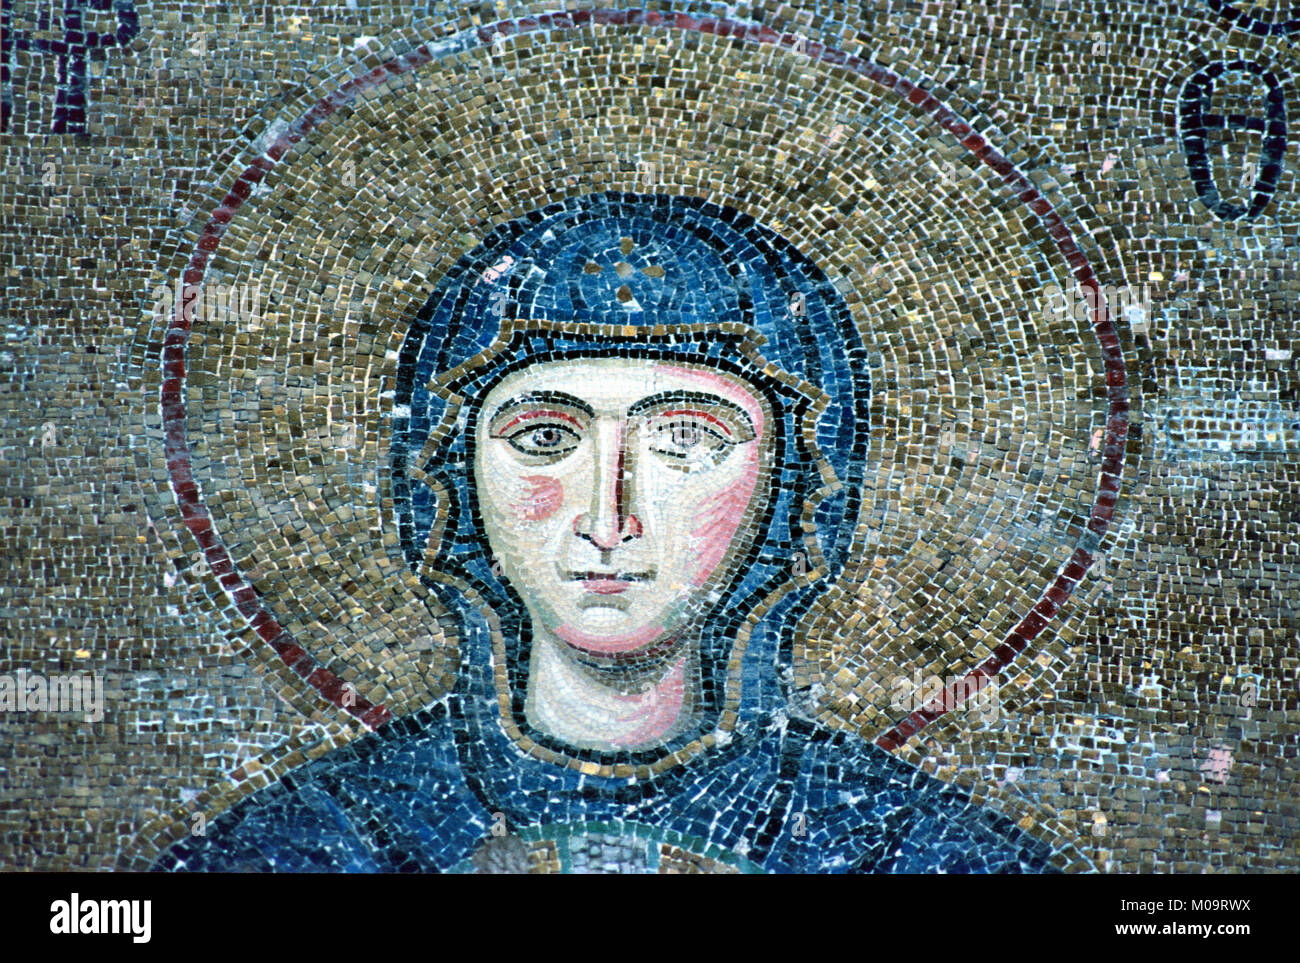 Mosaïque byzantine ou d'un portrait de la Vierge Marie dans la galerie sud du Musée de l'église Hagia Sophia, Sultanahmet, Istanbul, Turquie Banque D'Images